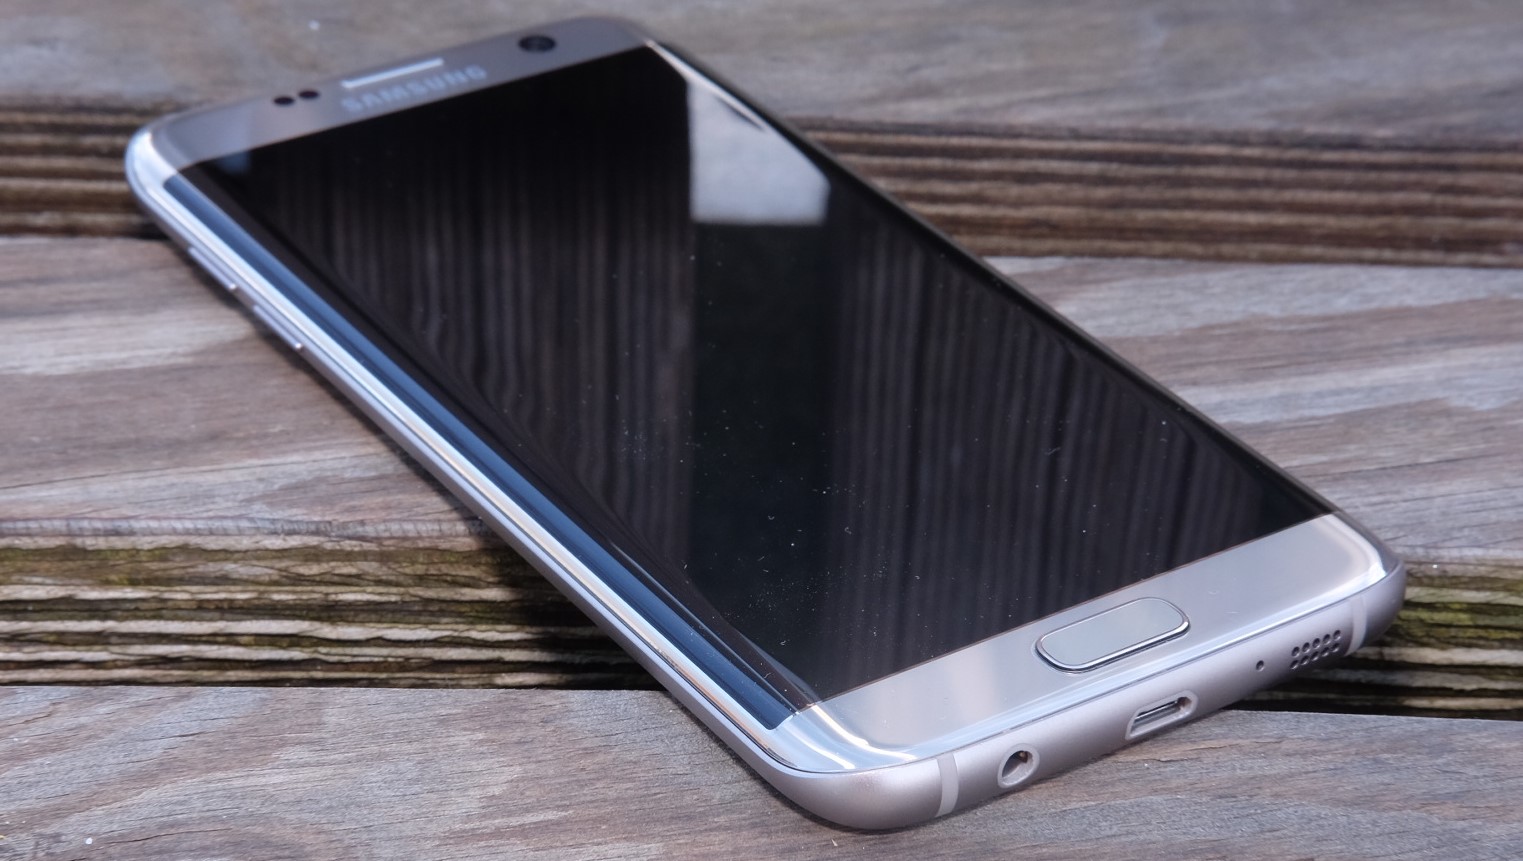 Nå kan du endelig oppdatere Samsung Galaxy S7 (edge) til Android 8.